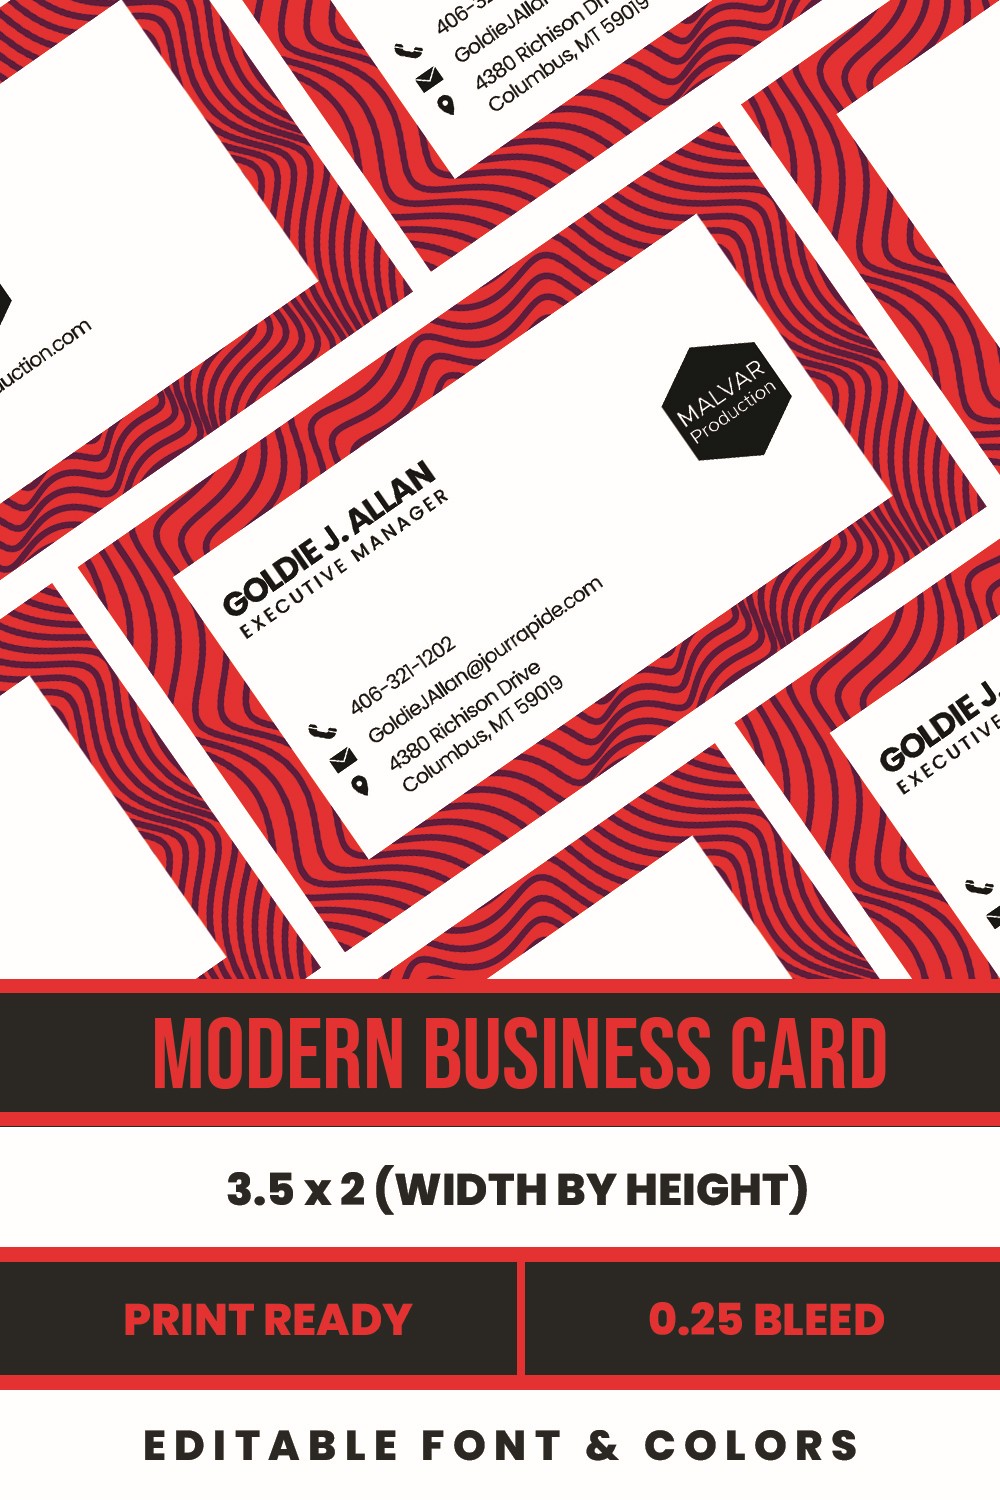 Modern Business Card Design ZEBRA LINES pinterest.